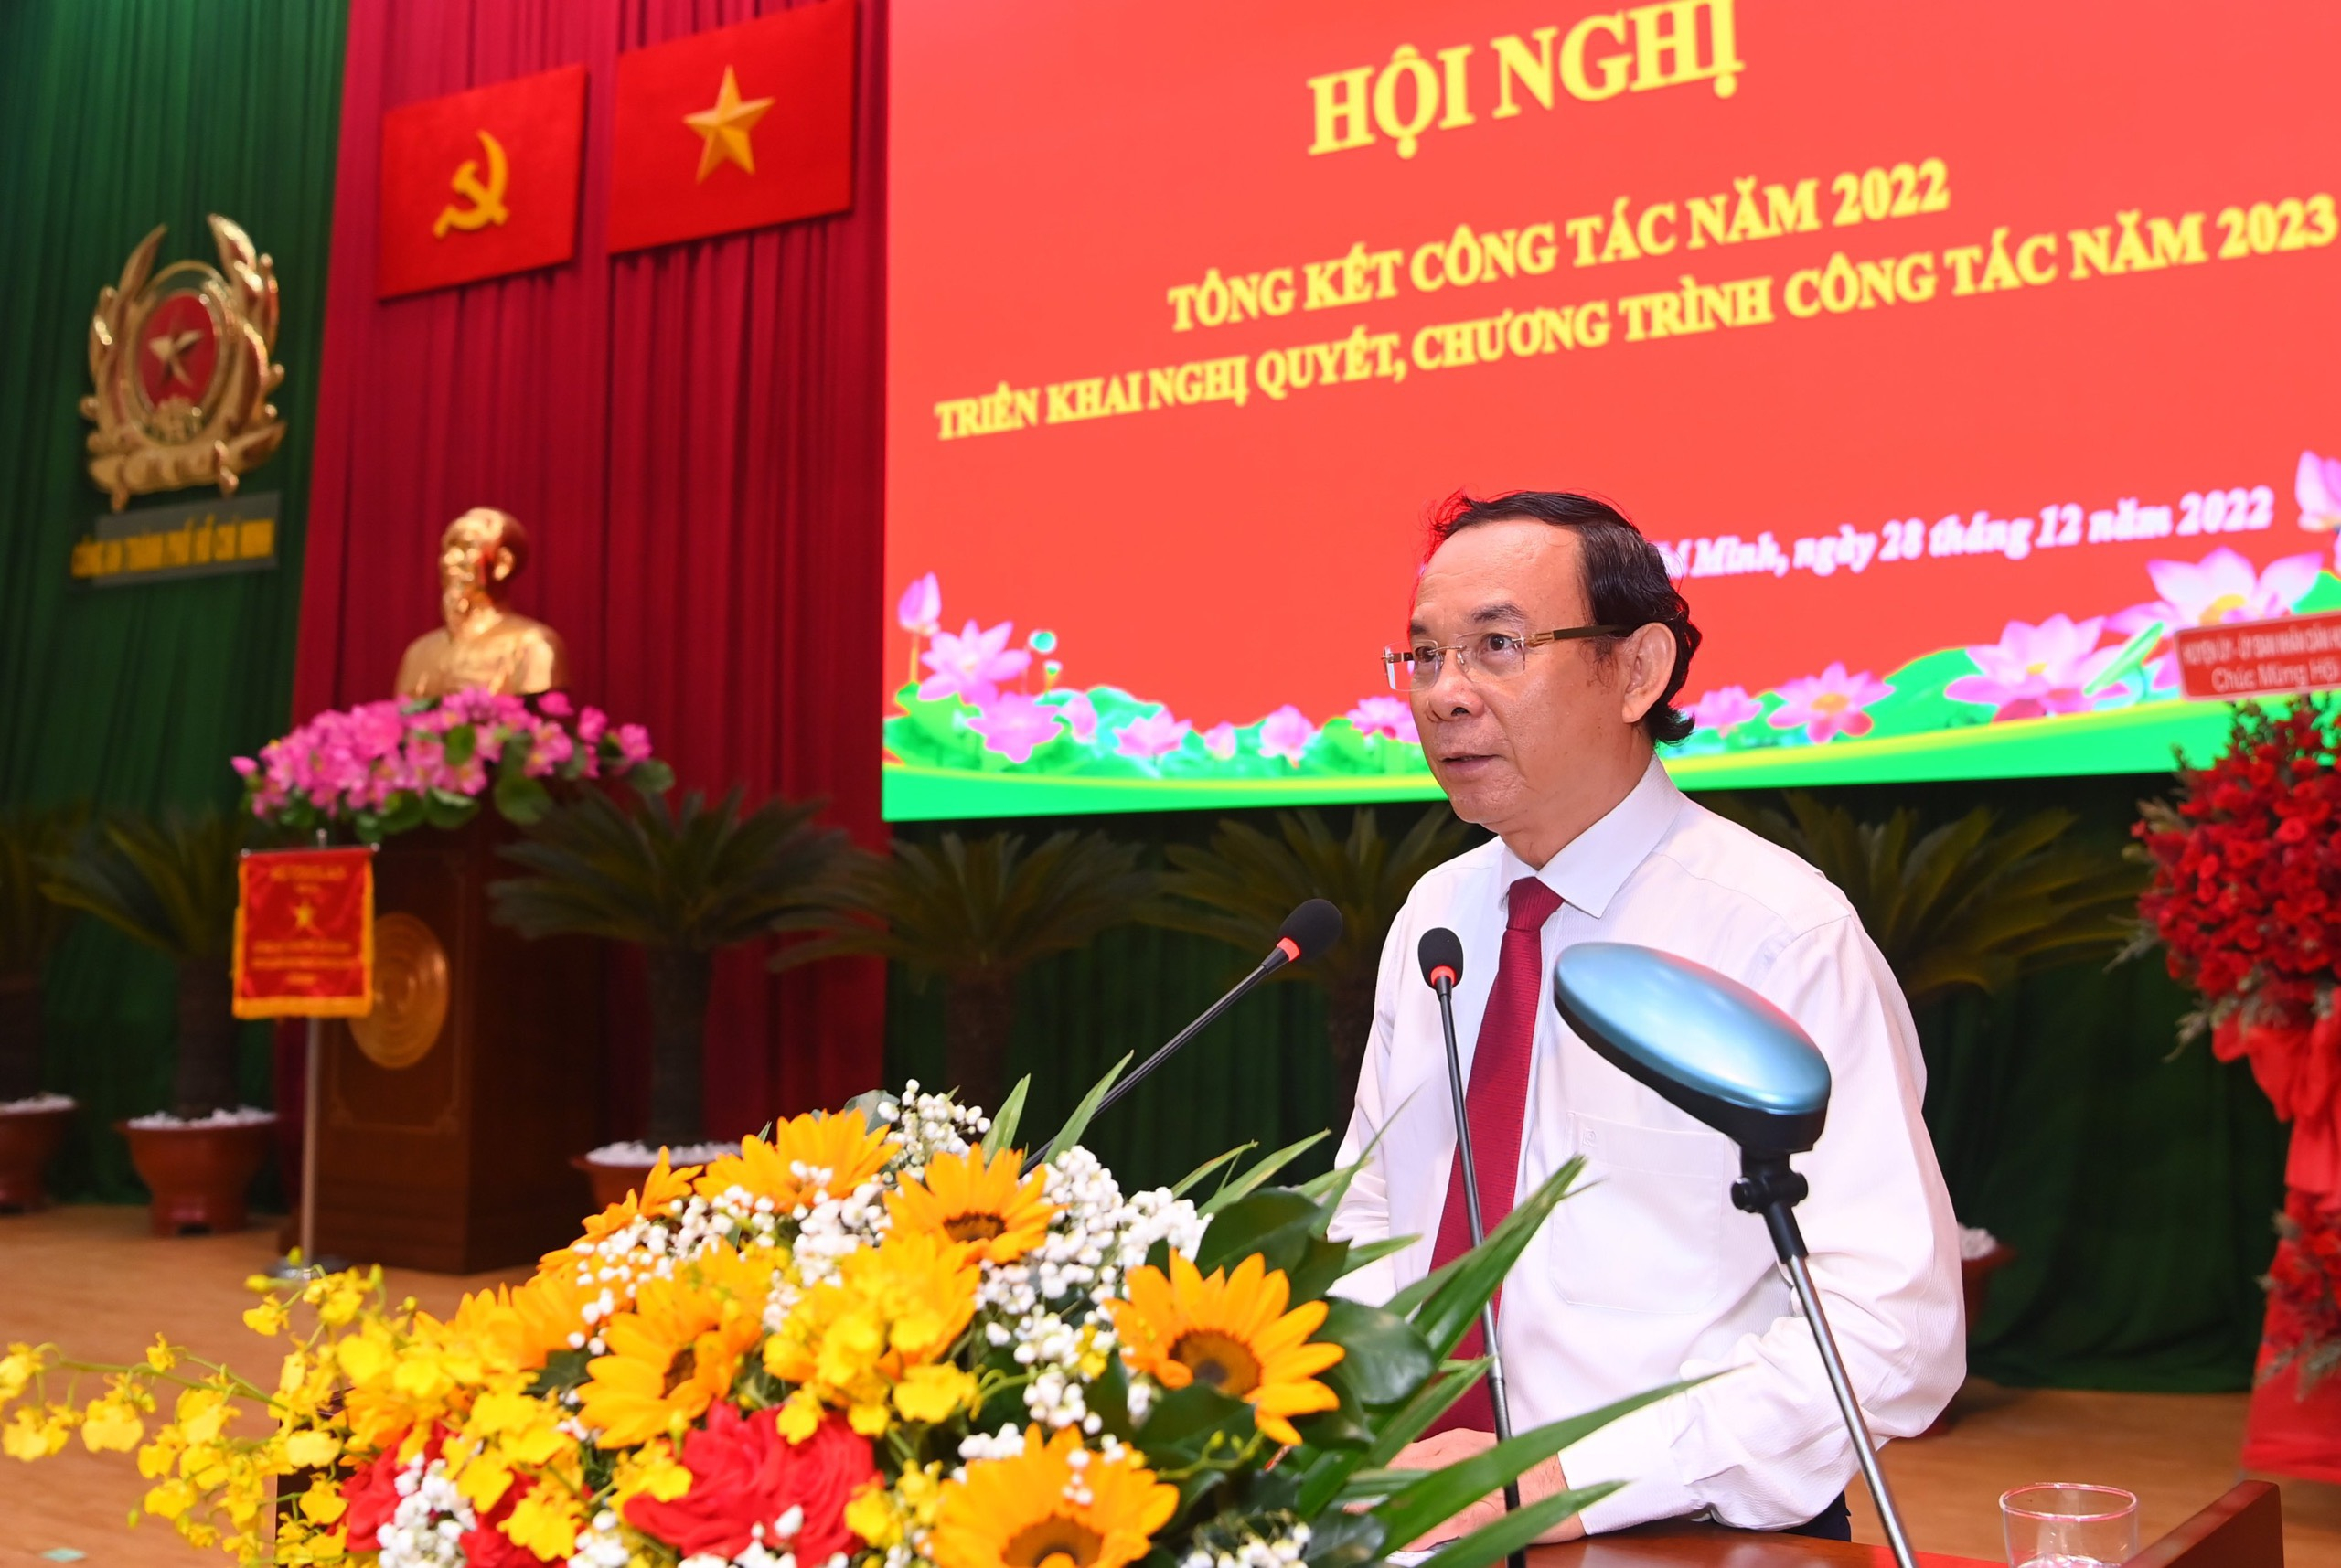 Đồng chí Nguyễn Văn Nên - Ủy viên Bộ Chính trị, Bí thư Thành ủy Thành phố Hồ Chí Minh phát biểu tại Hội nghị